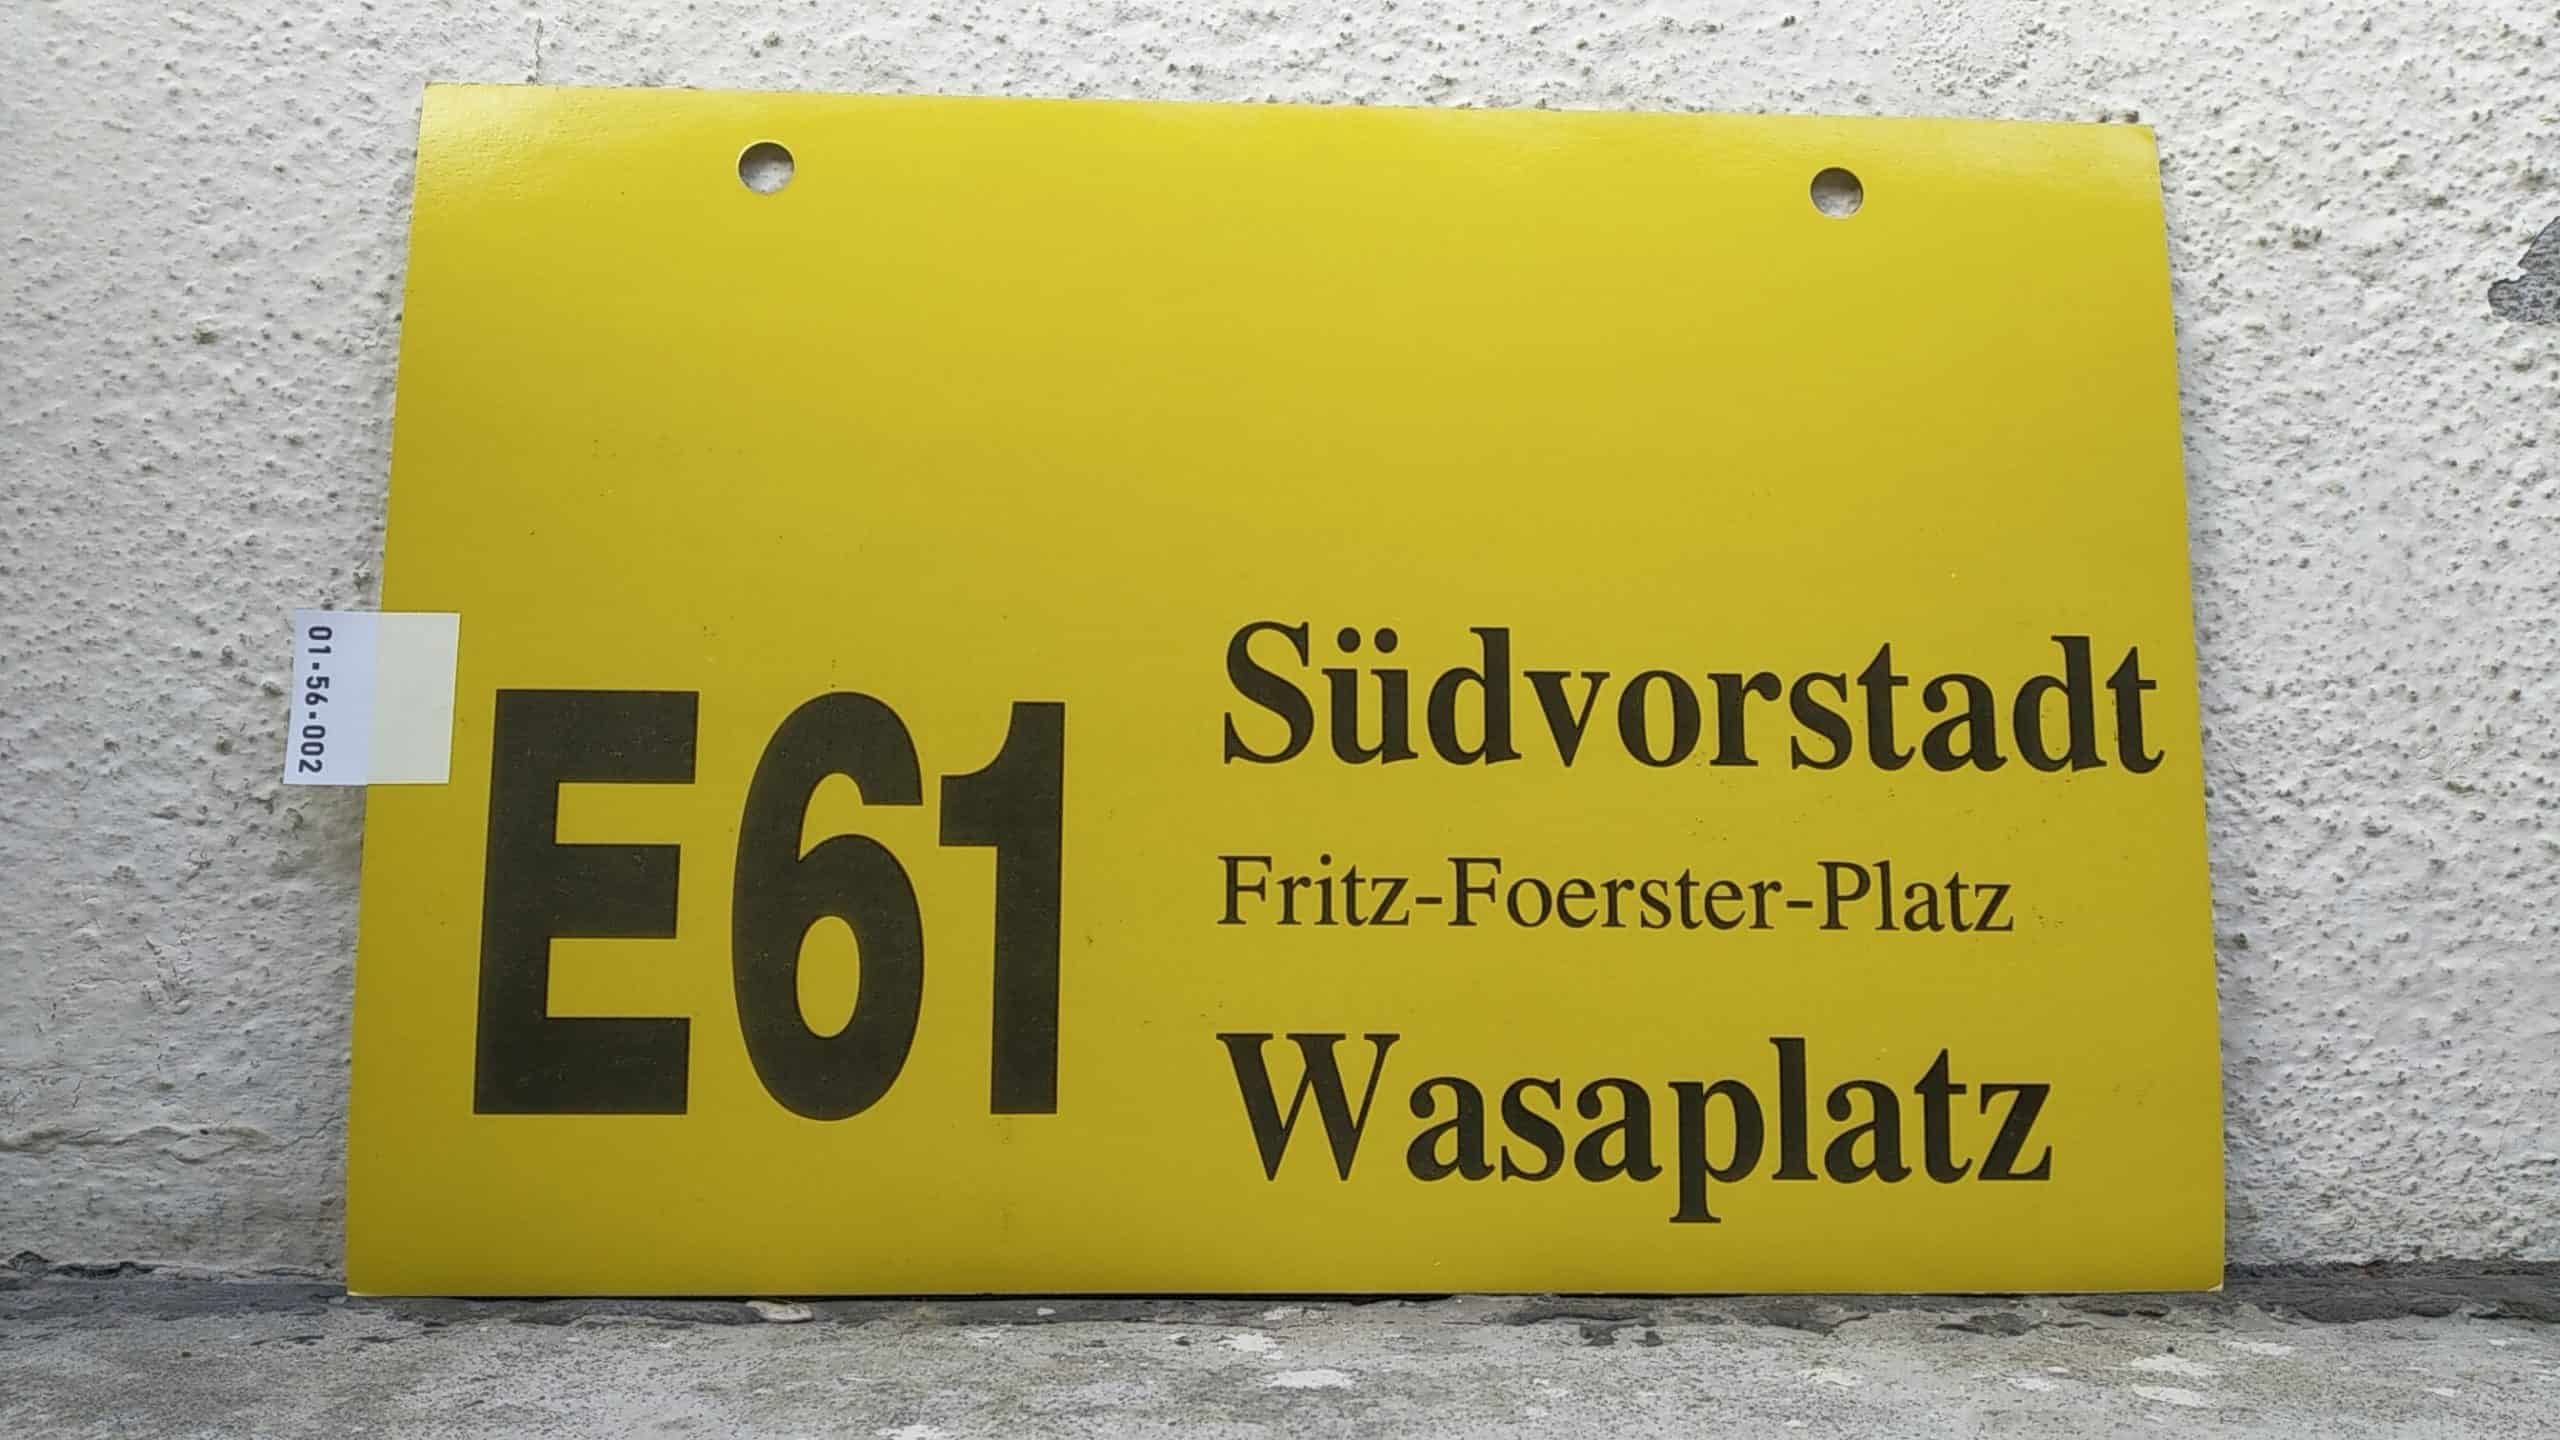 Ein seltenes Bus-Linienschild aus Dresden der Linie E 61 von Südvorstadt nach Wasaplatz #1